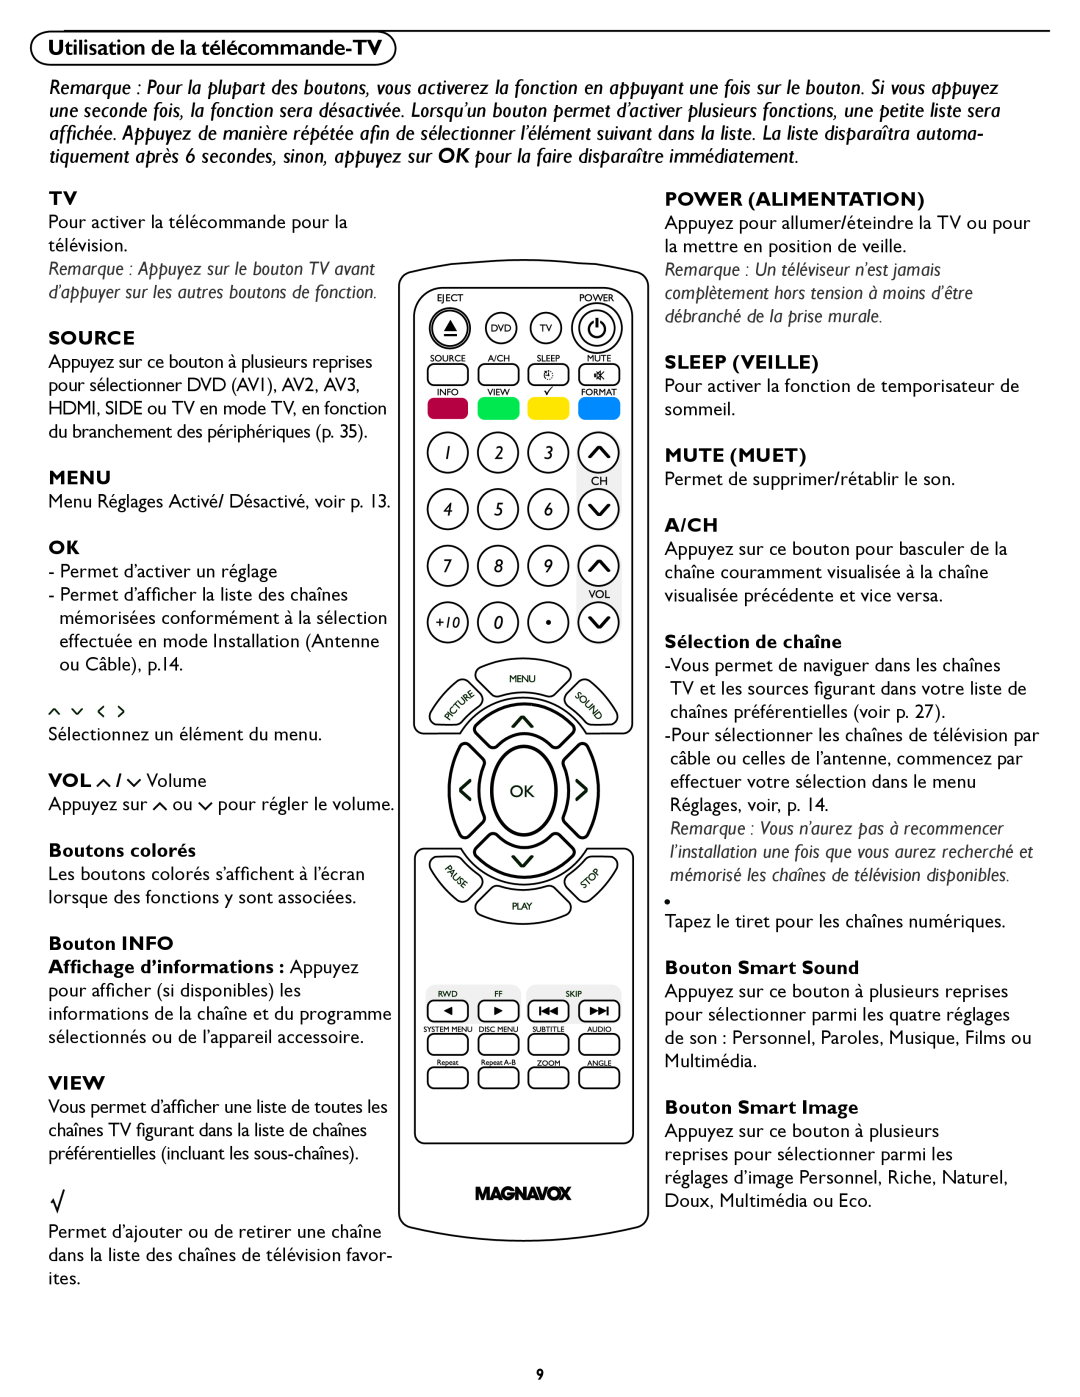 Magnavox 26MD/32MD251D Utilisation de la télécommande-TV, Source, Menu, VOL / Volume, Boutons colorés, Bouton INFO, View 